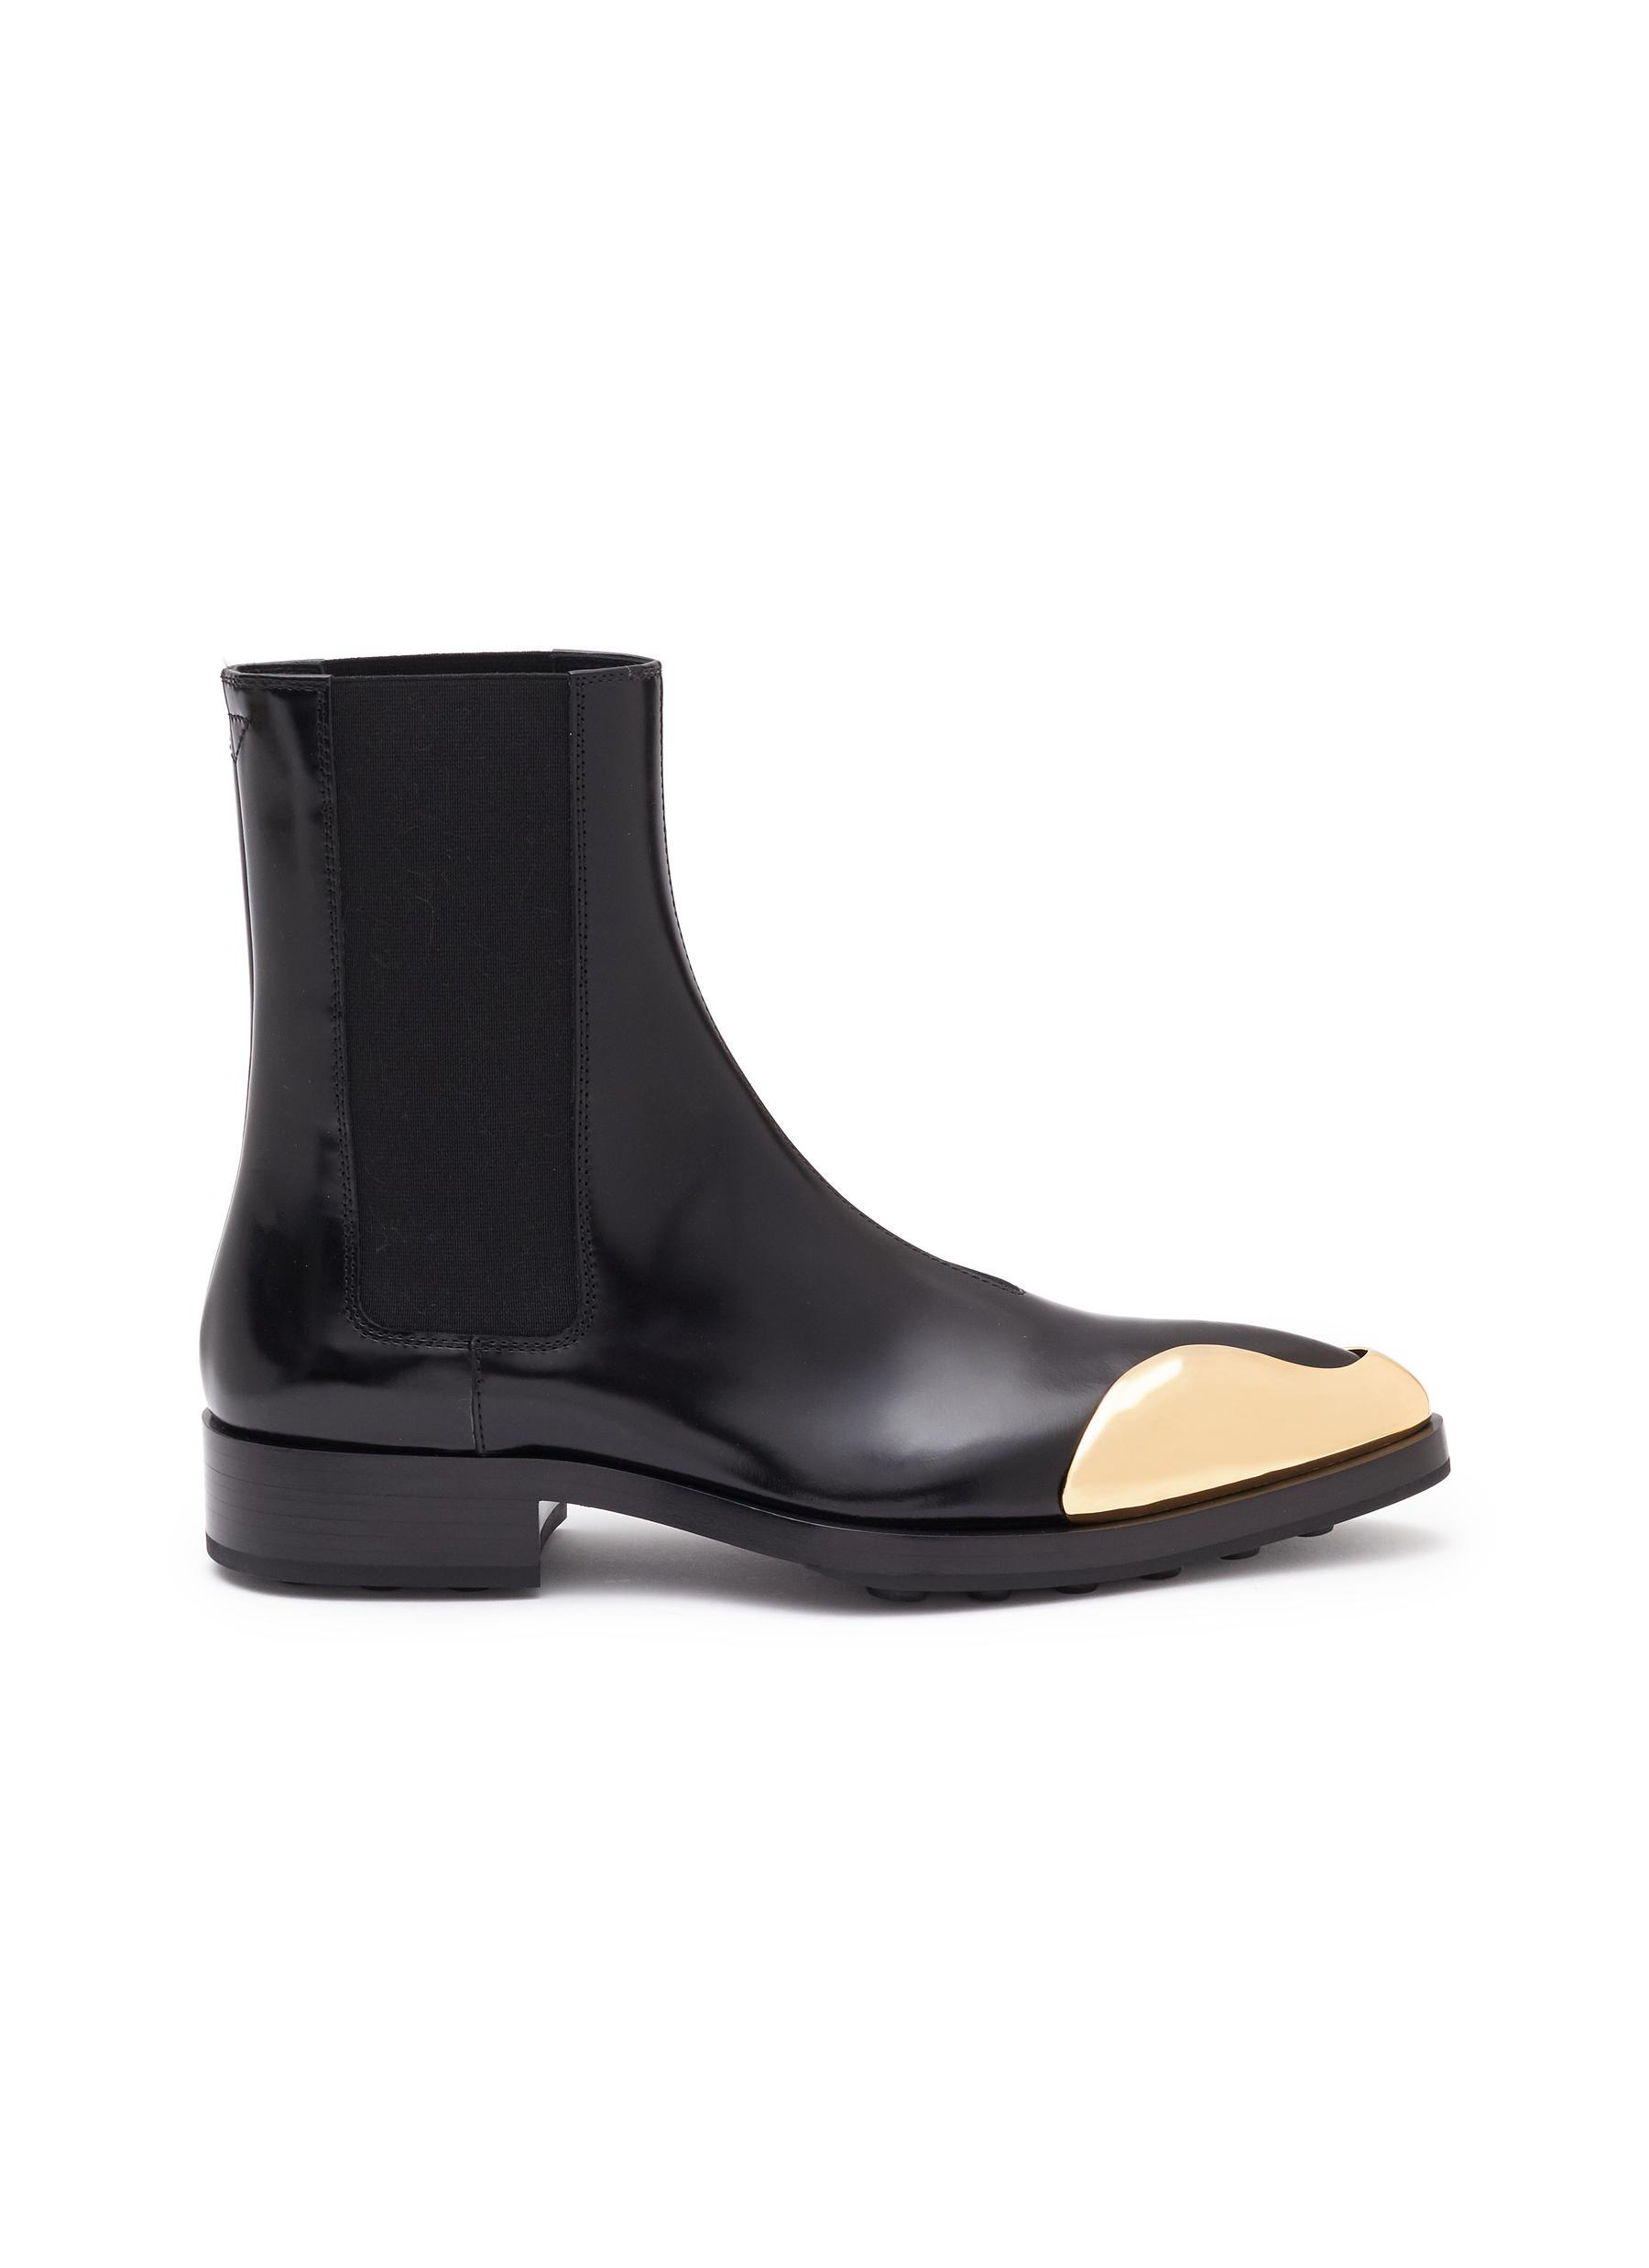 Jil Sander Asymmetric Metal Point Toe Chelsea Boots in Black | Lyst UK